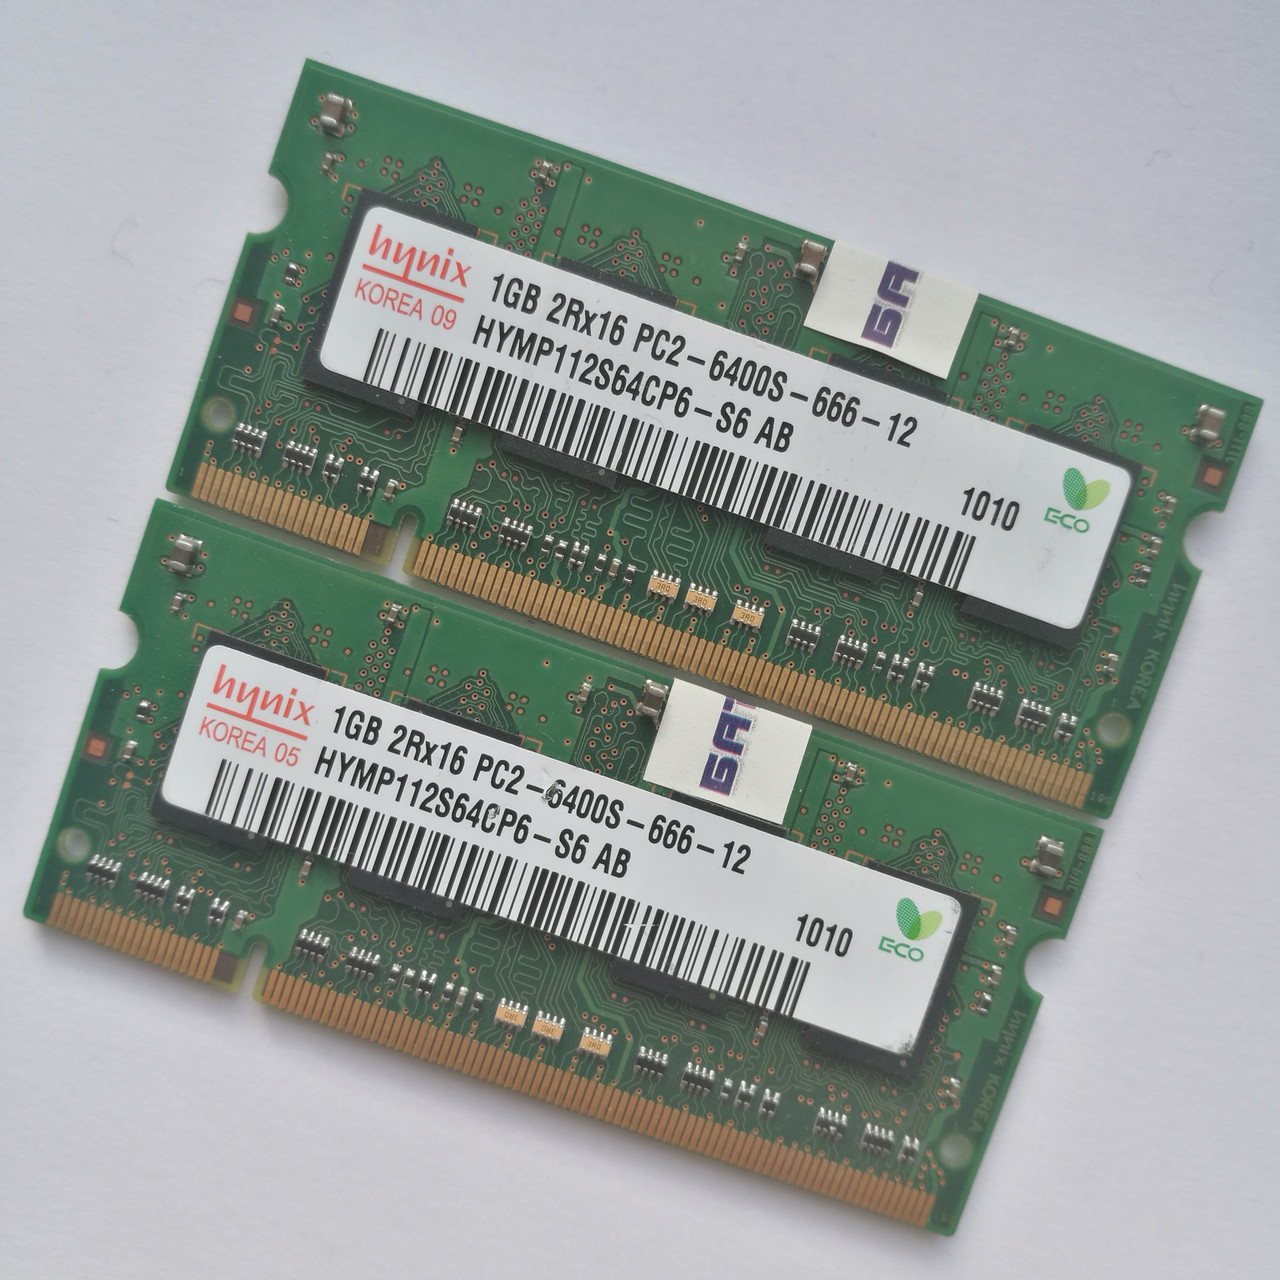 Пара оперативной памяти для ноутбука Hynix SODIMM DDR2 2Gb (1+1) 800MHz 6400s CL6 (HYMP112S64CP6-S6 AB) Б/У